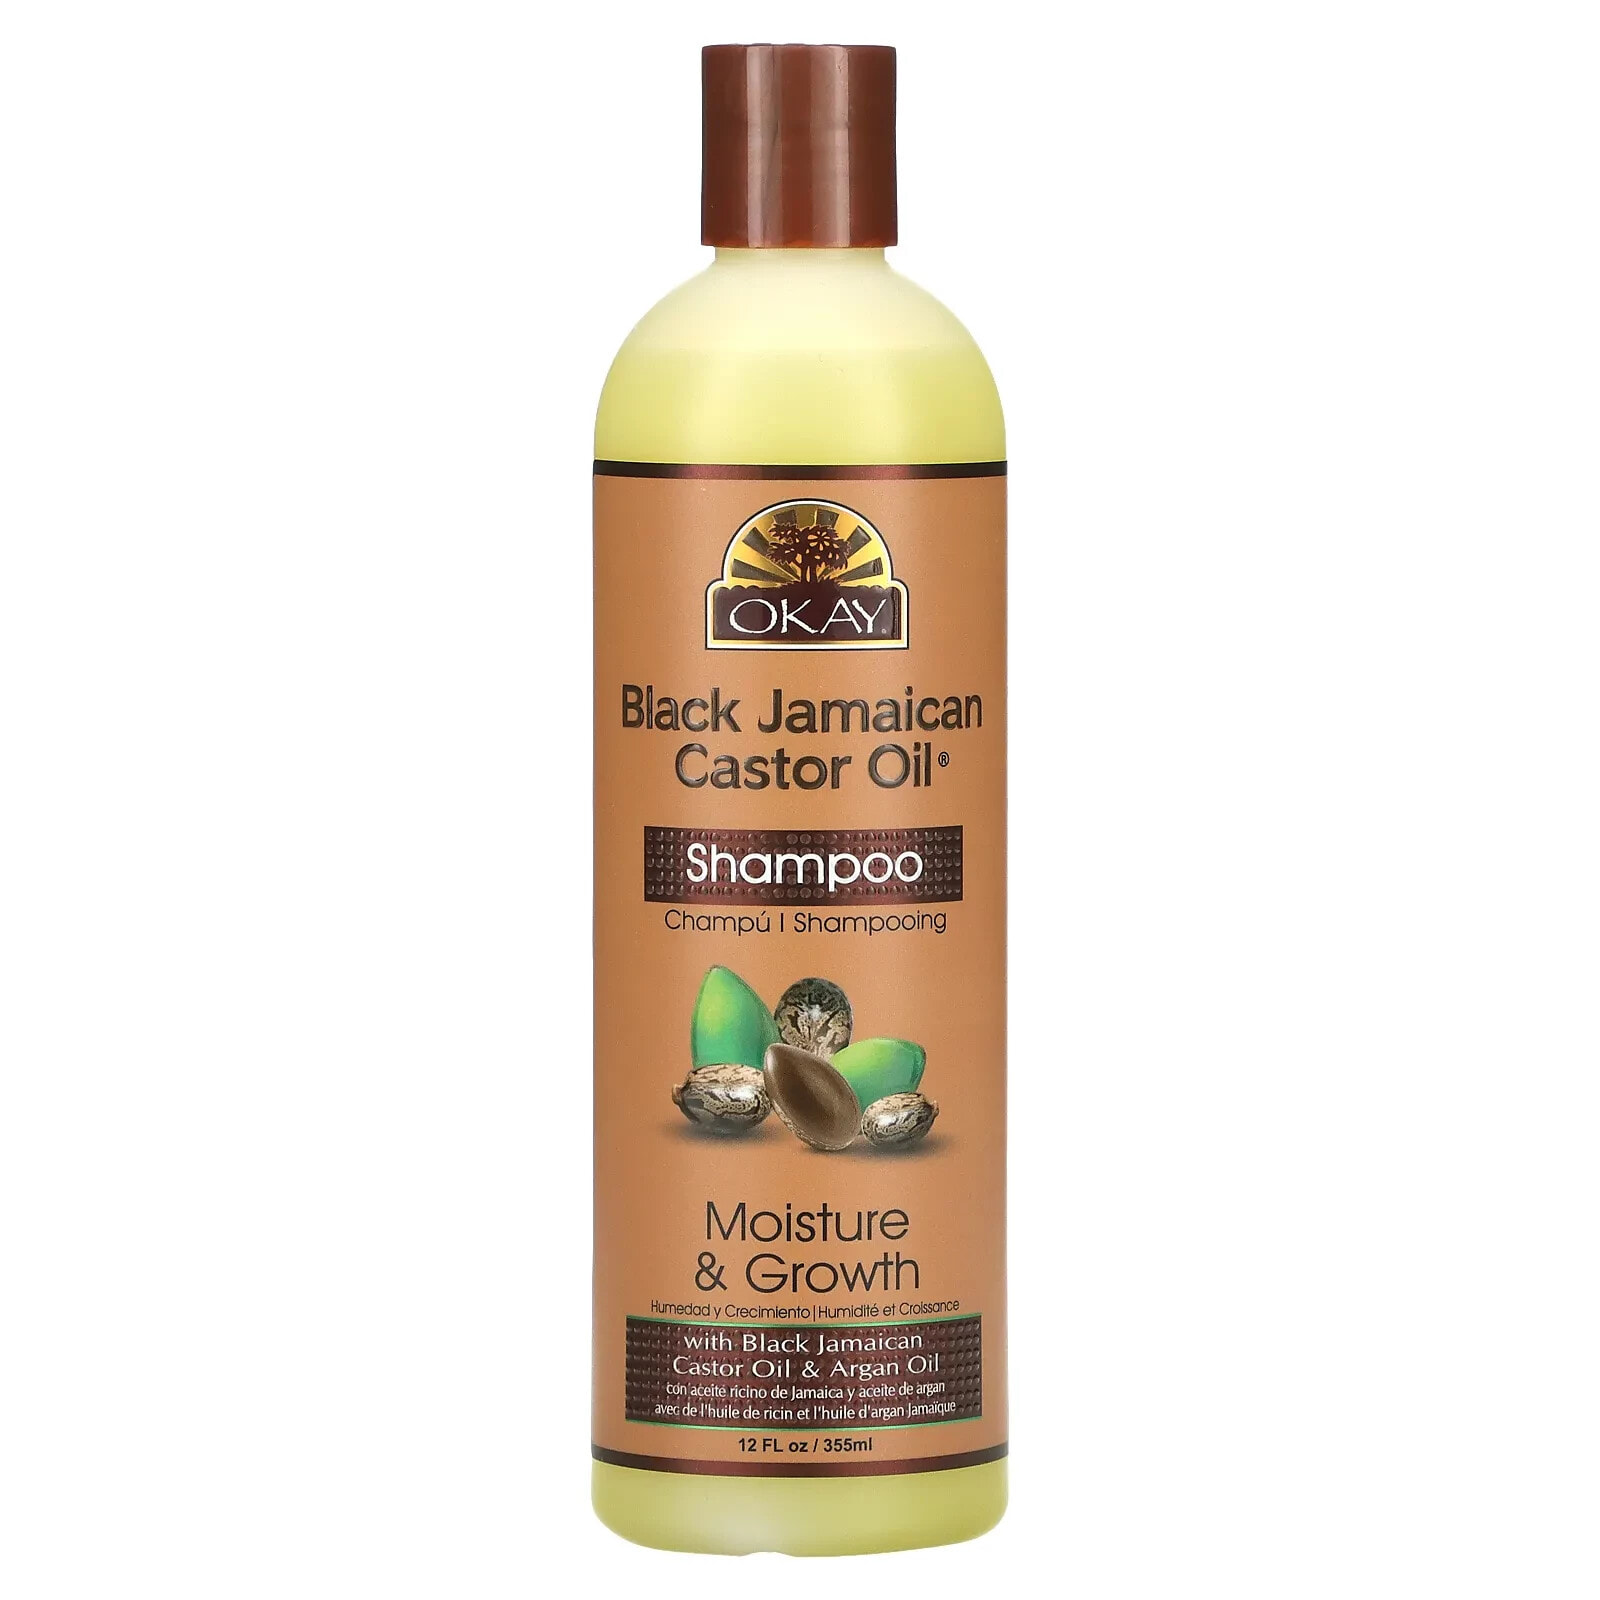 OKAY Pure Naturals Black Jamaican Castor Oil Shampoo Шампунь с черным ямайским касторовым маслом для увлажнения и роста волос 355 мл